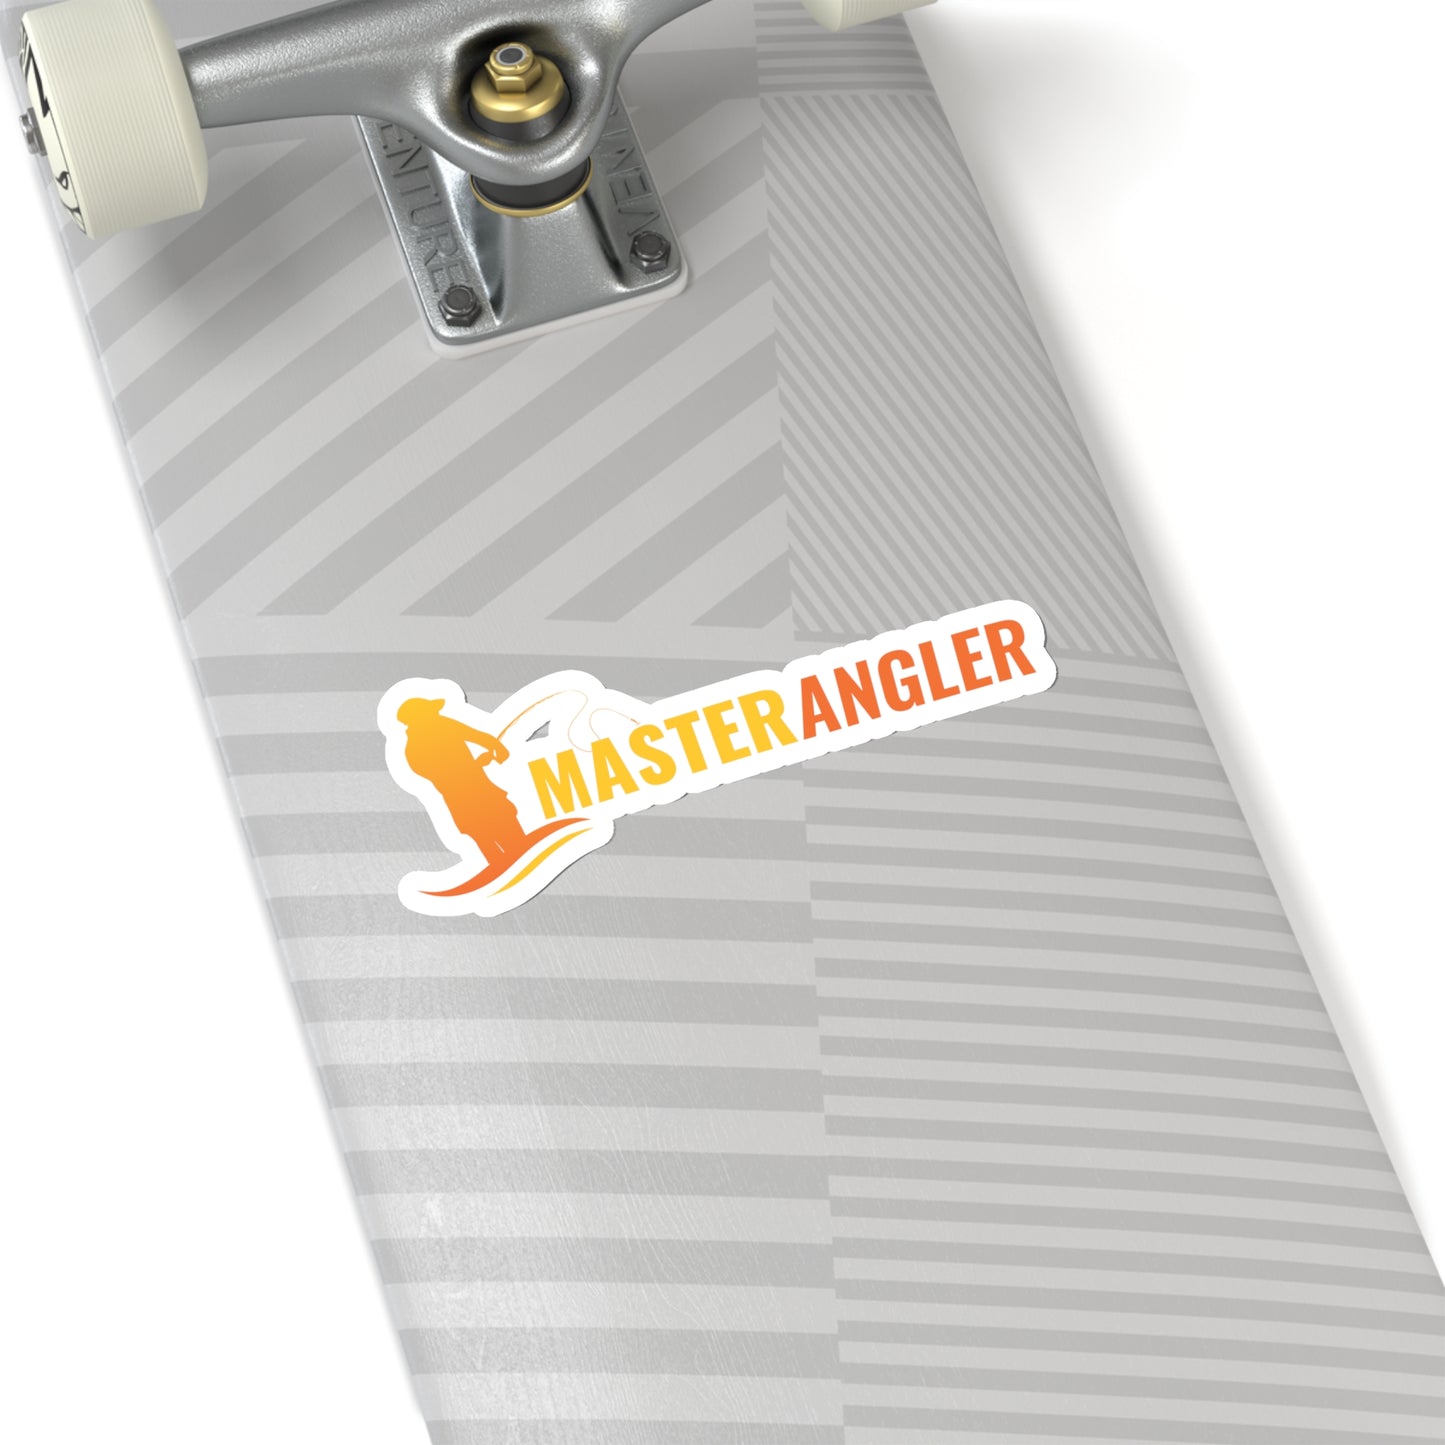 Master Angler Sticker Long - Orange